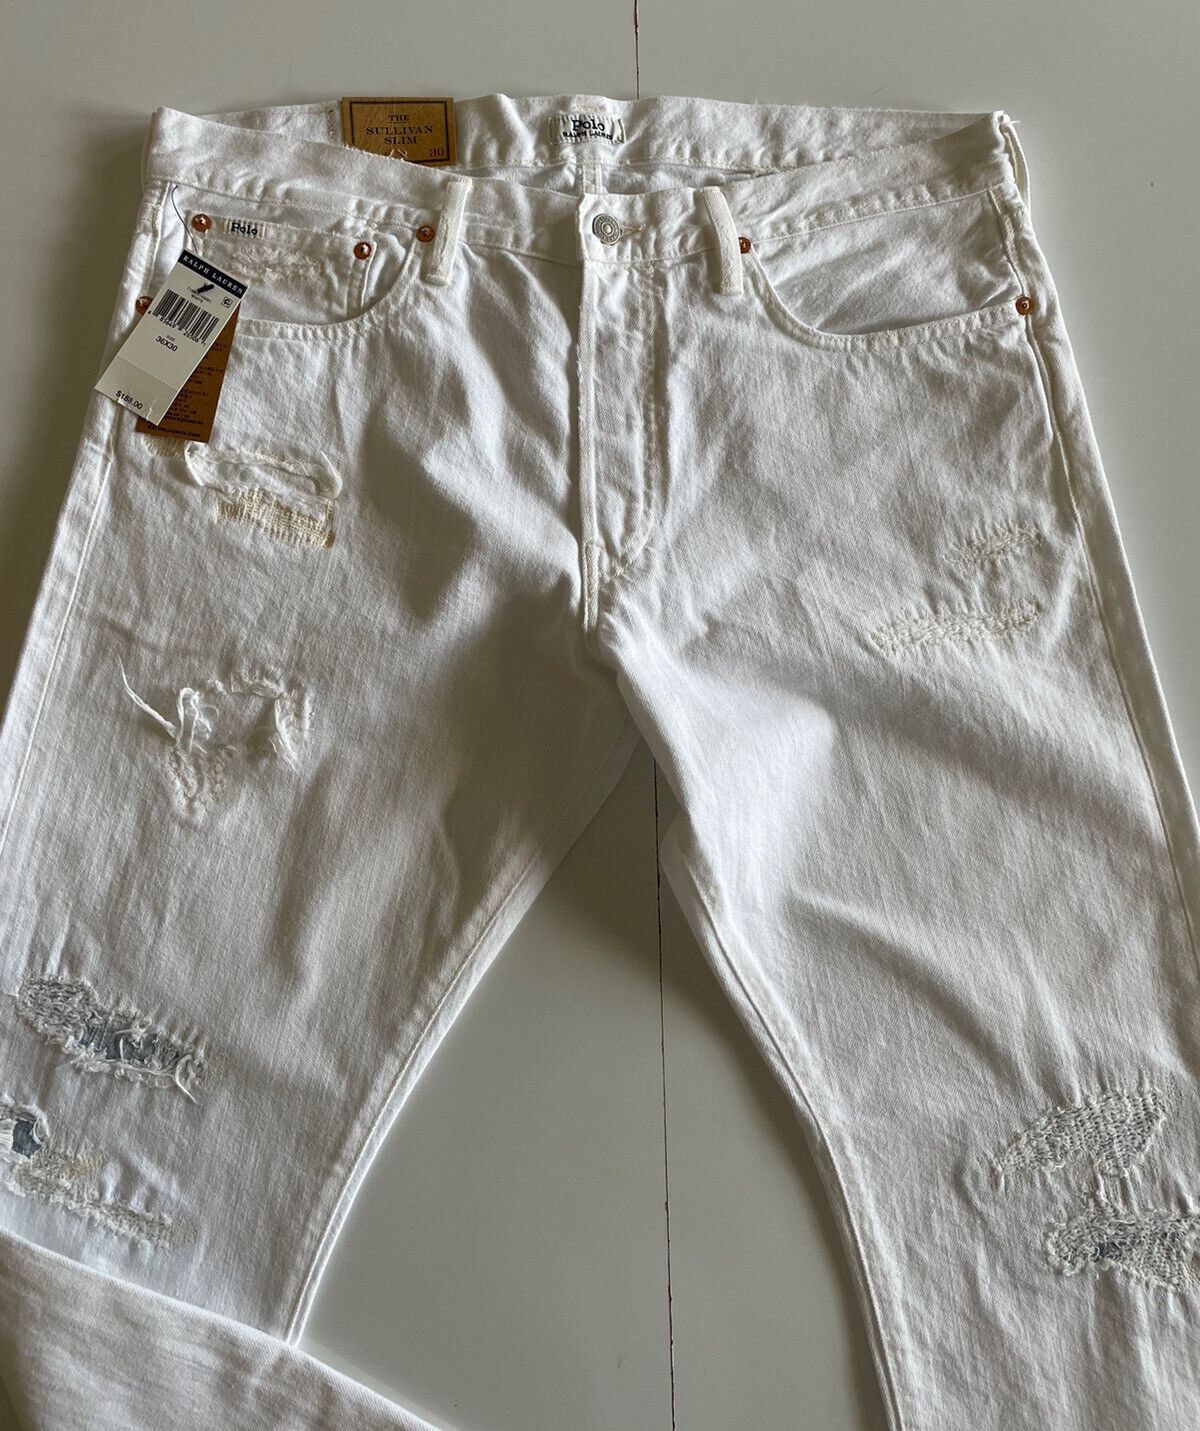 Neu mit Etikett: 188 $ Polo Ralph Lauren Herren-Jeans The Sullivan Slim in Weiß, Größe 36 x 32 (38 Zoll)